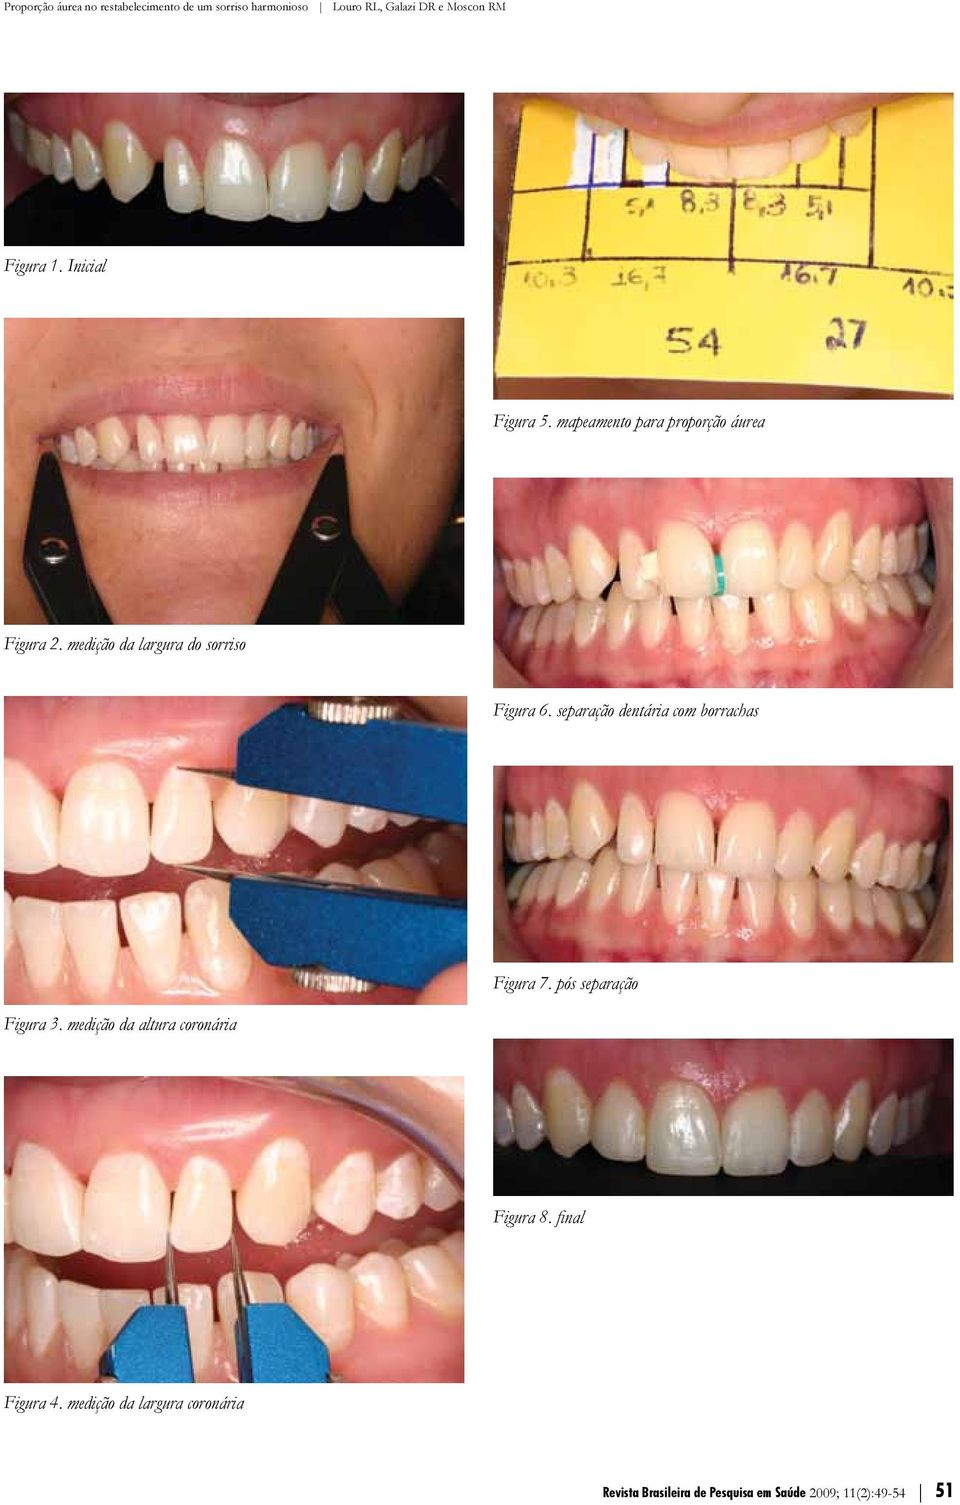 separação dentária com borrachas Figura 3. medição da altura coronária Figura 7.